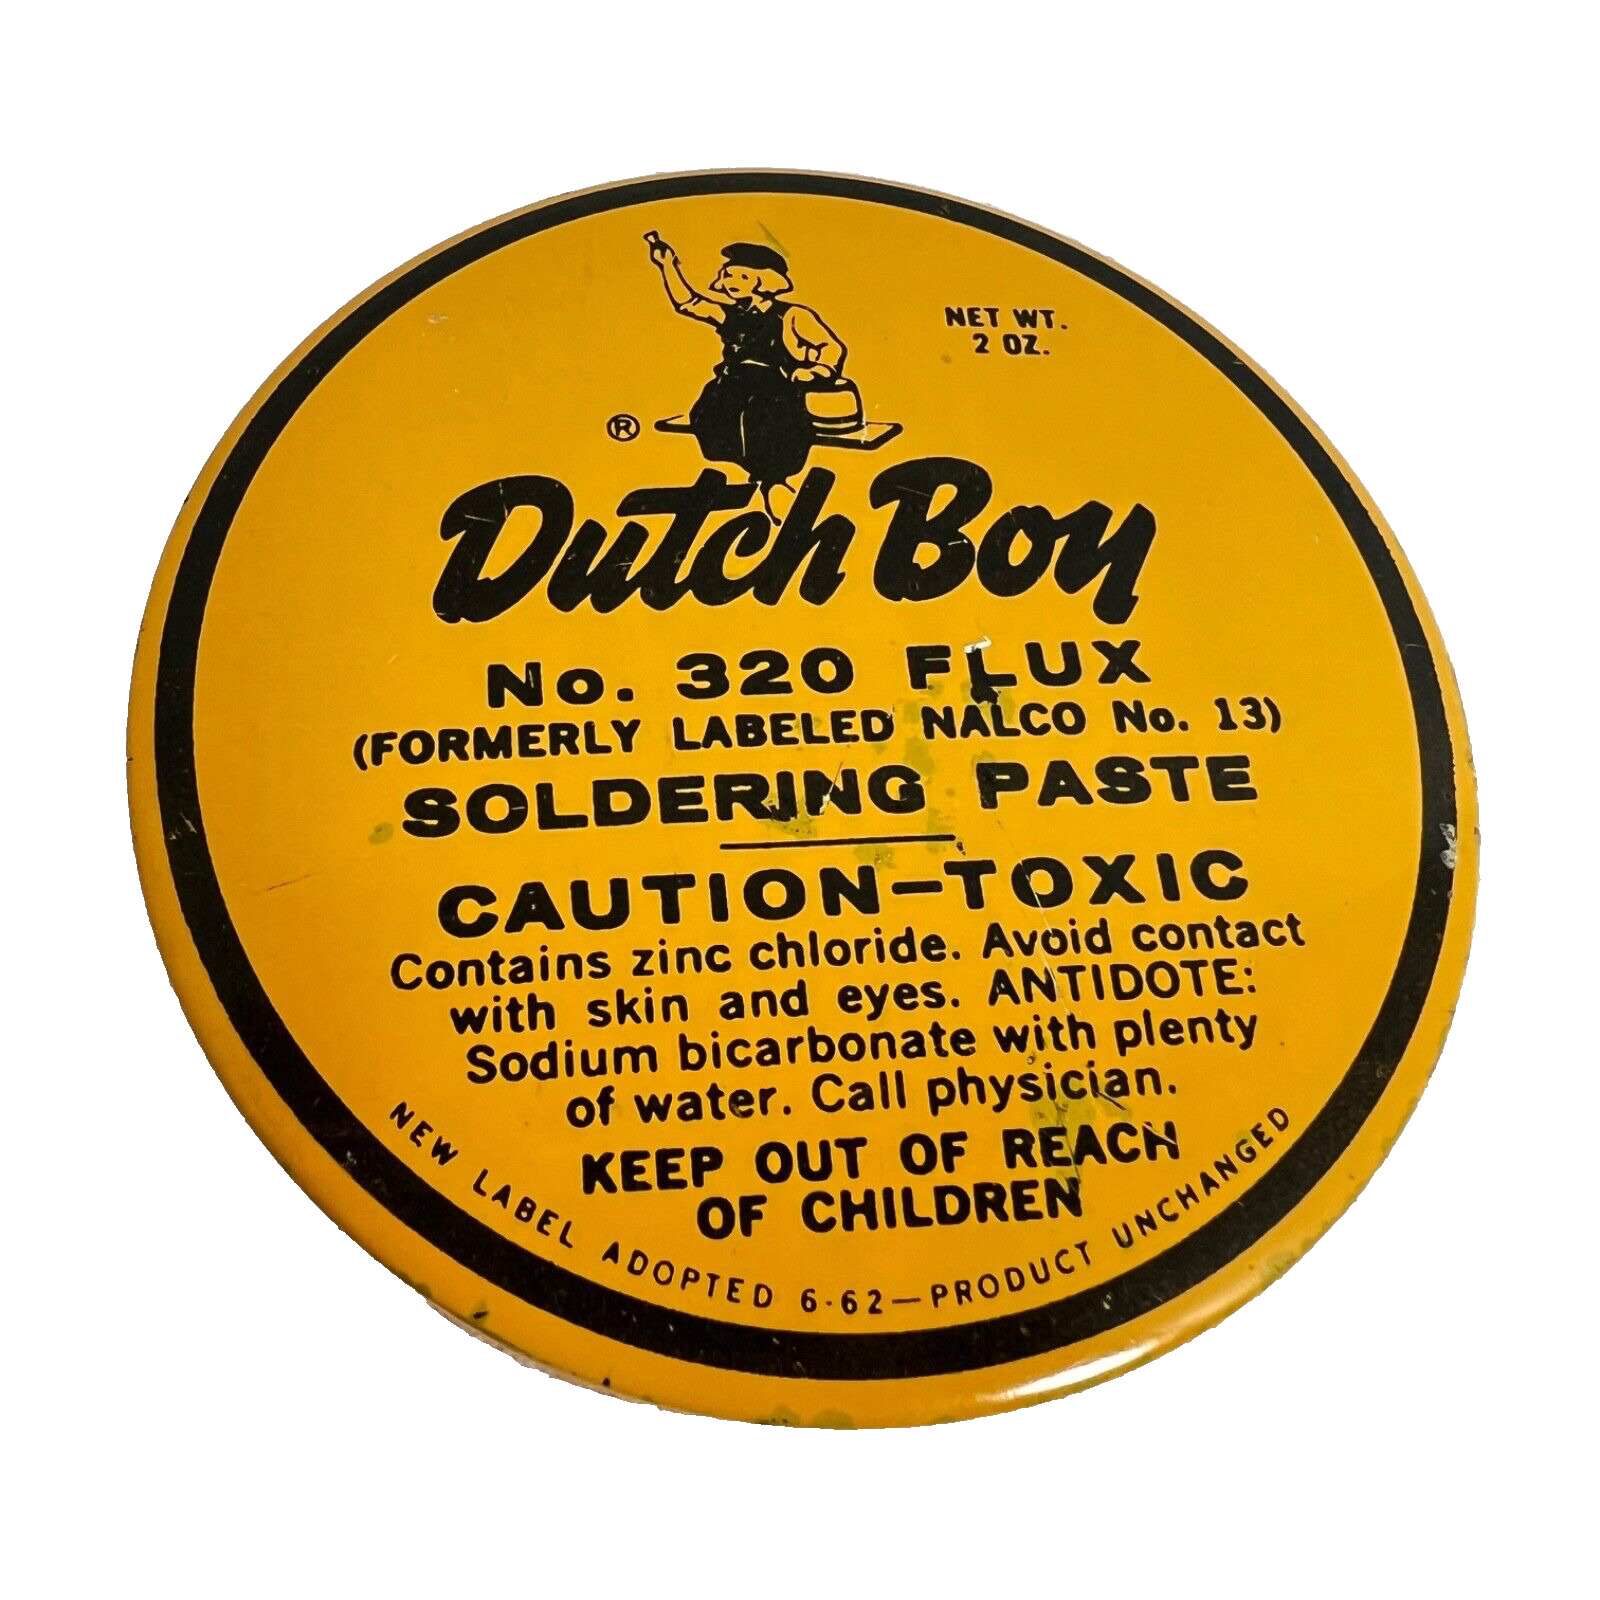 Dutch Boy Vintage Soldering Paste Orange Round Tin No 320 Flux Nalco NOS